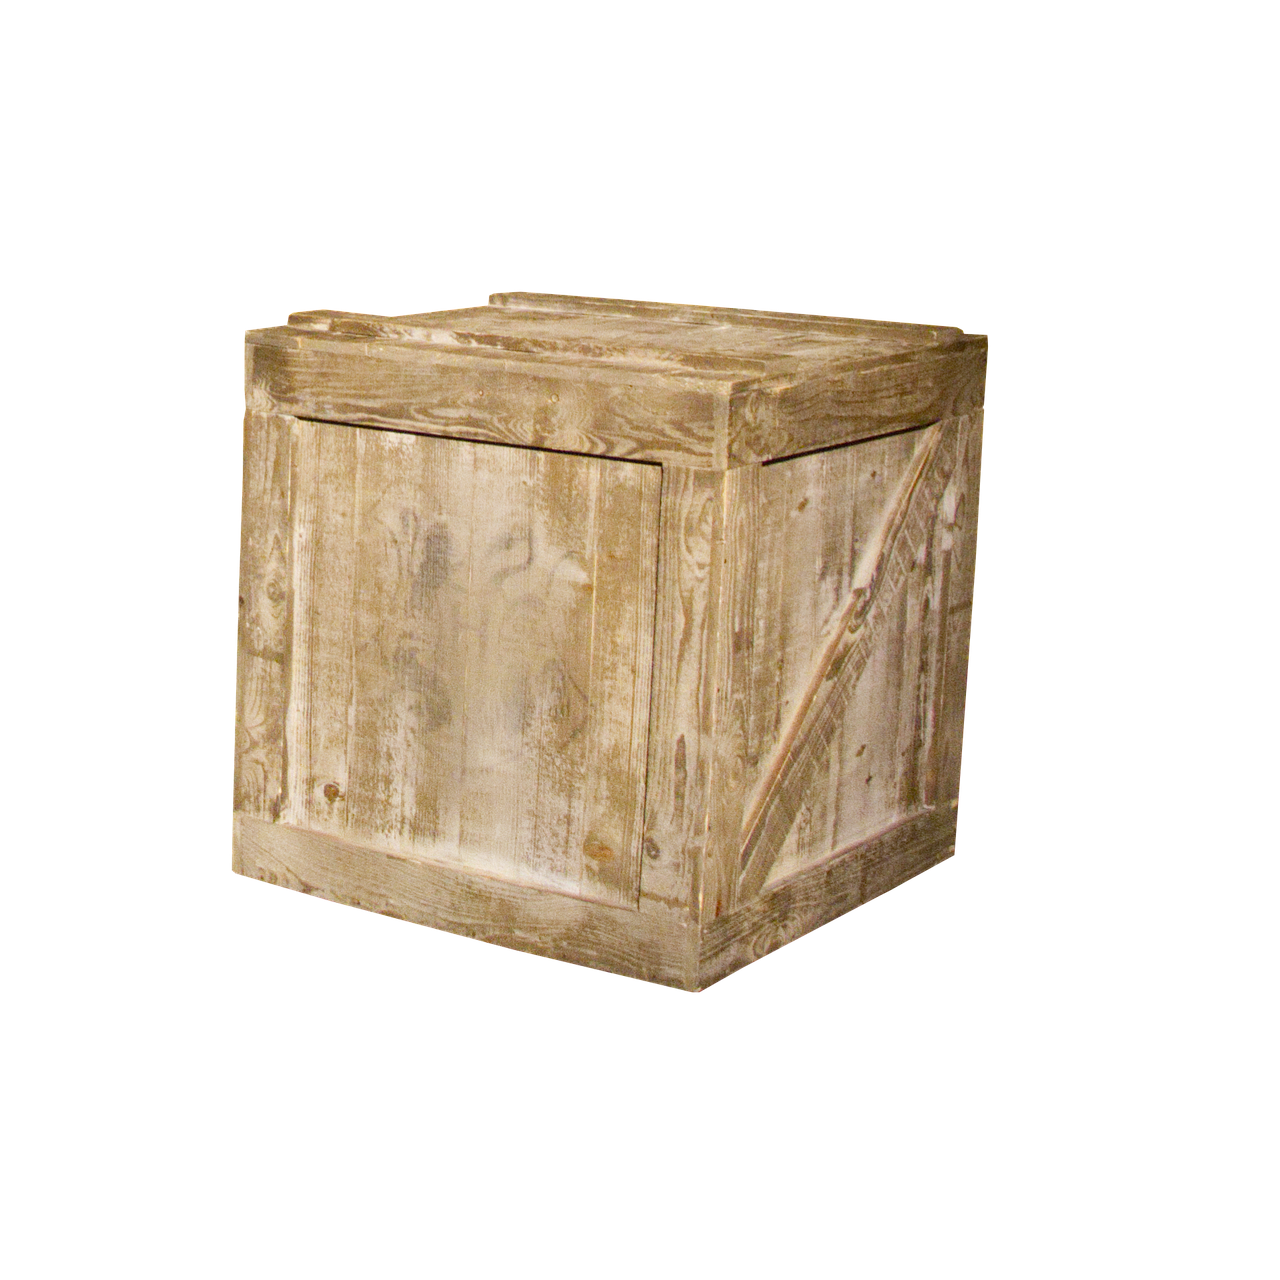 Деревянная коробка без крышки имеет форму куба. Деревянный ящик квадратный. Деревянный ящик без фона. Коробка деревянная квадратная. Деревянный ящик на прозрачном фоне.